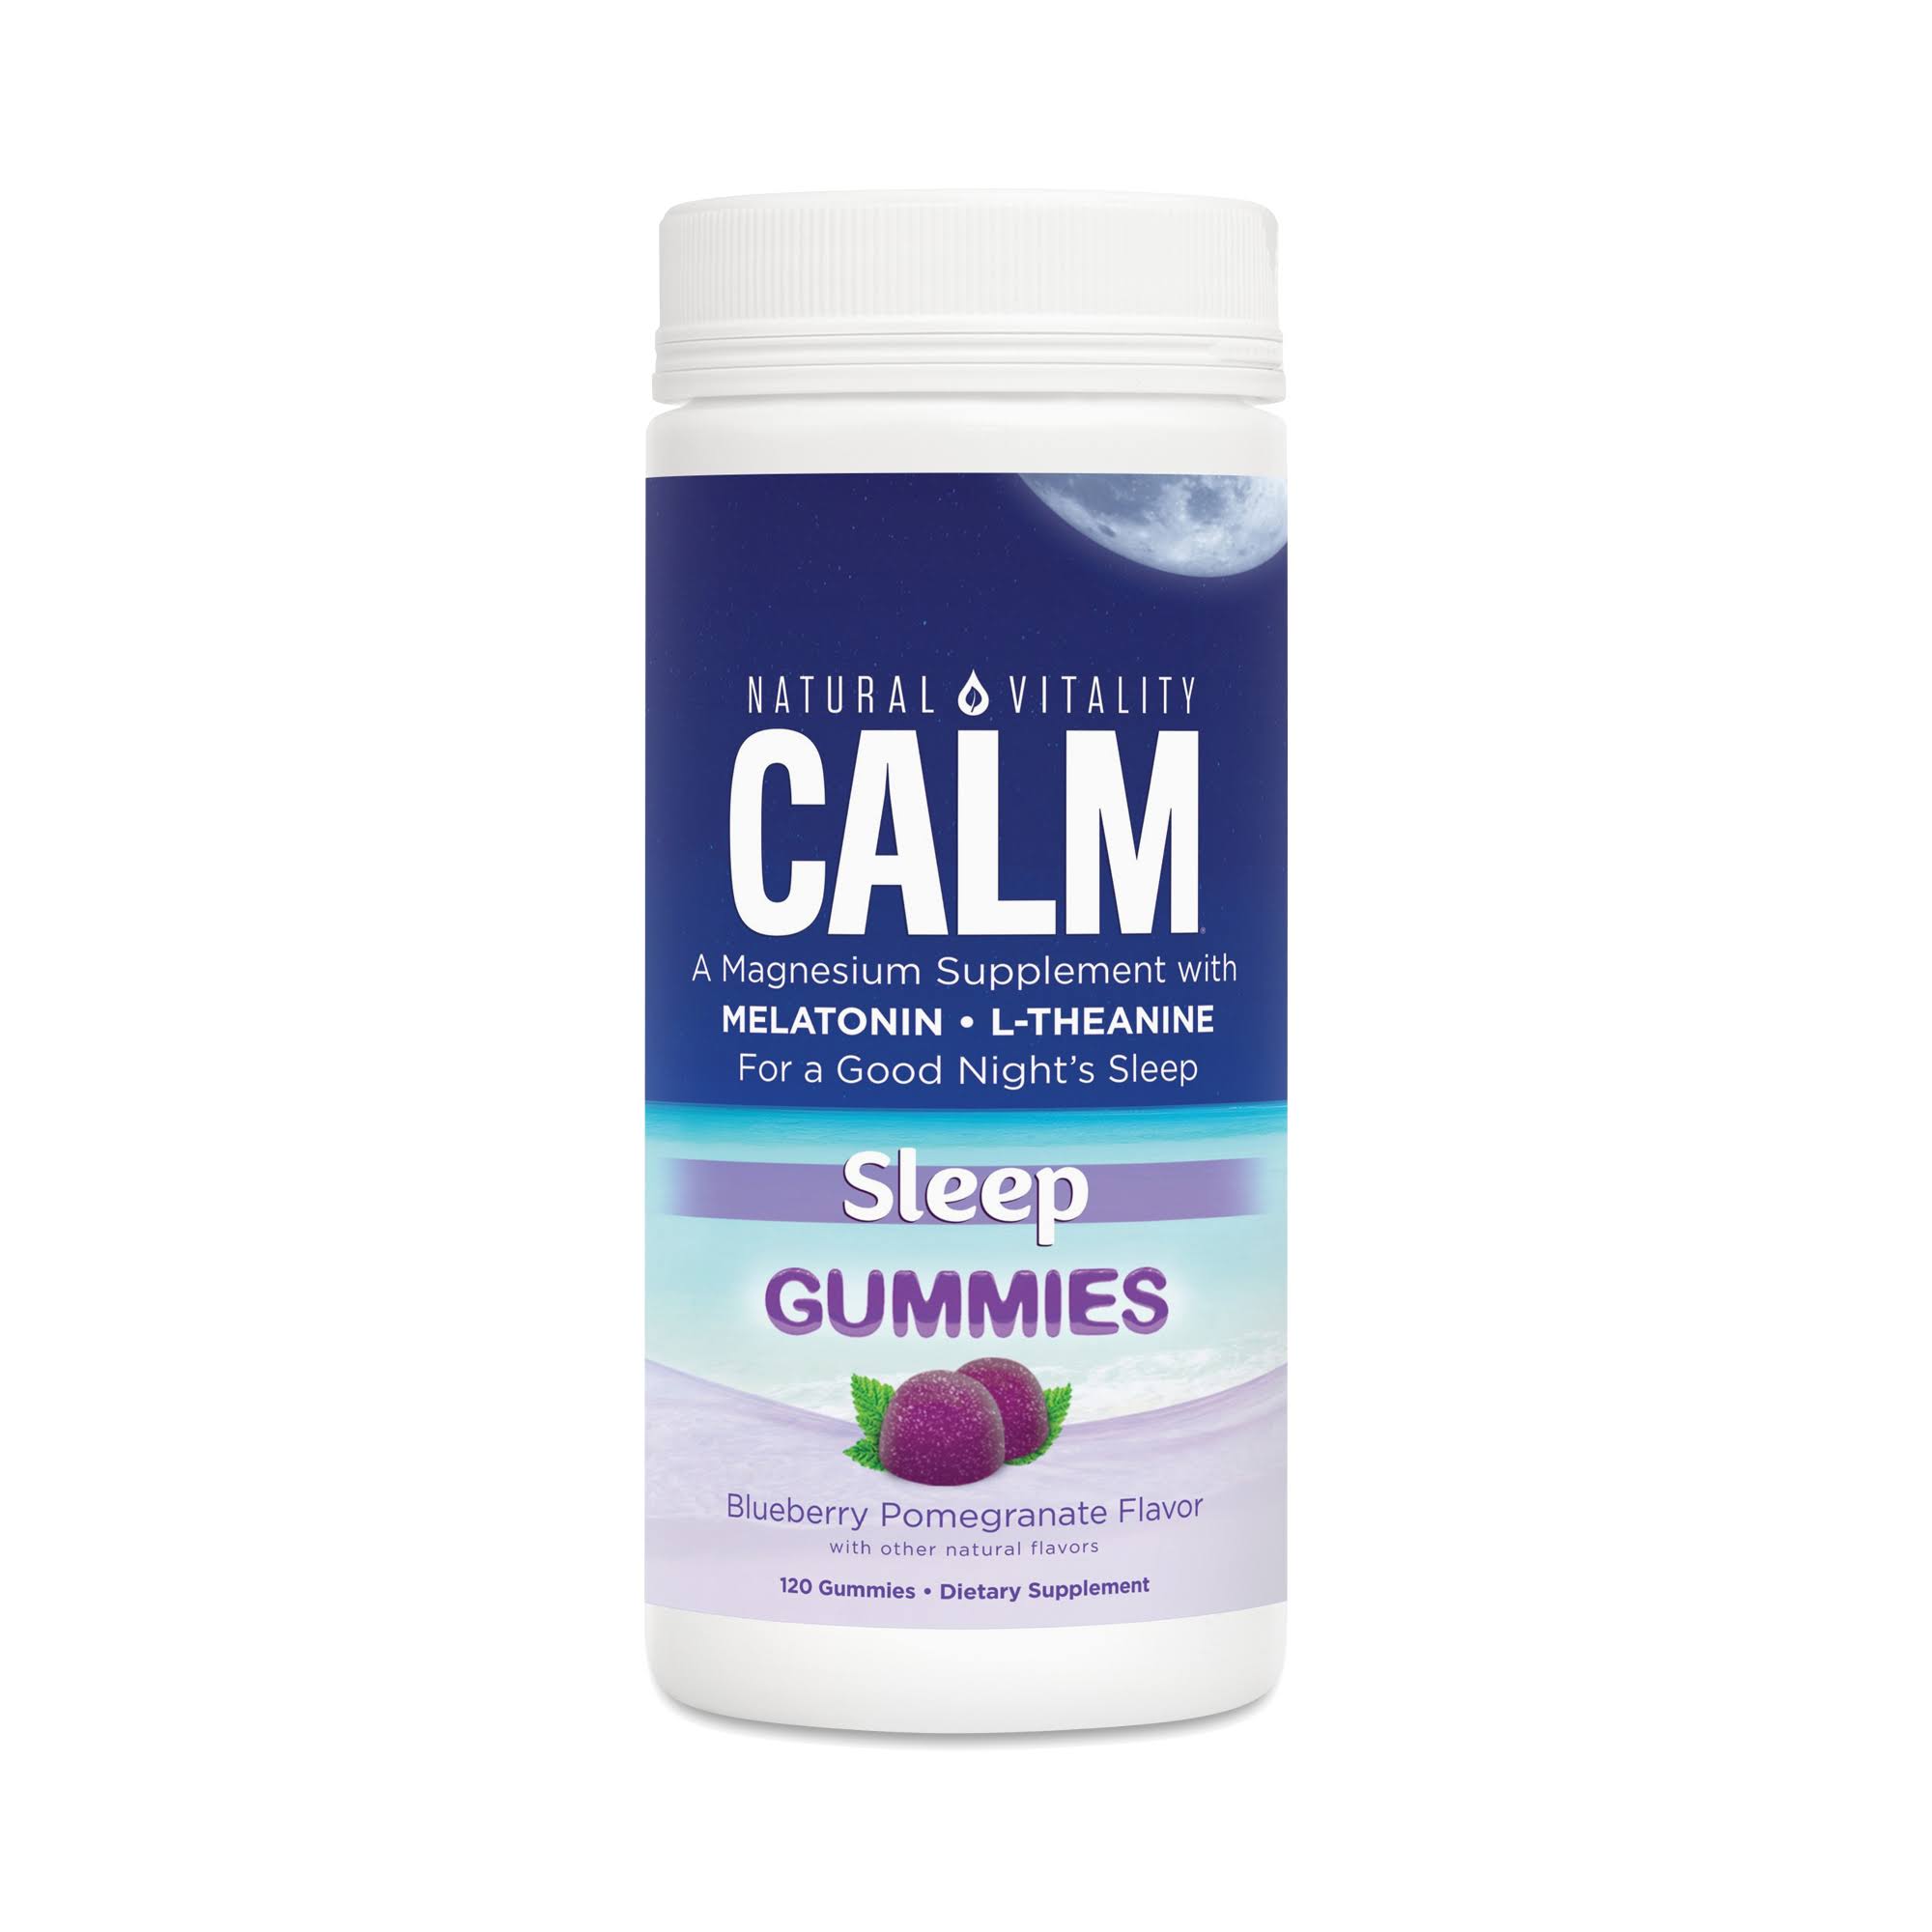 Natural Vitality Calm Sleep Gummies (120 Gummies)